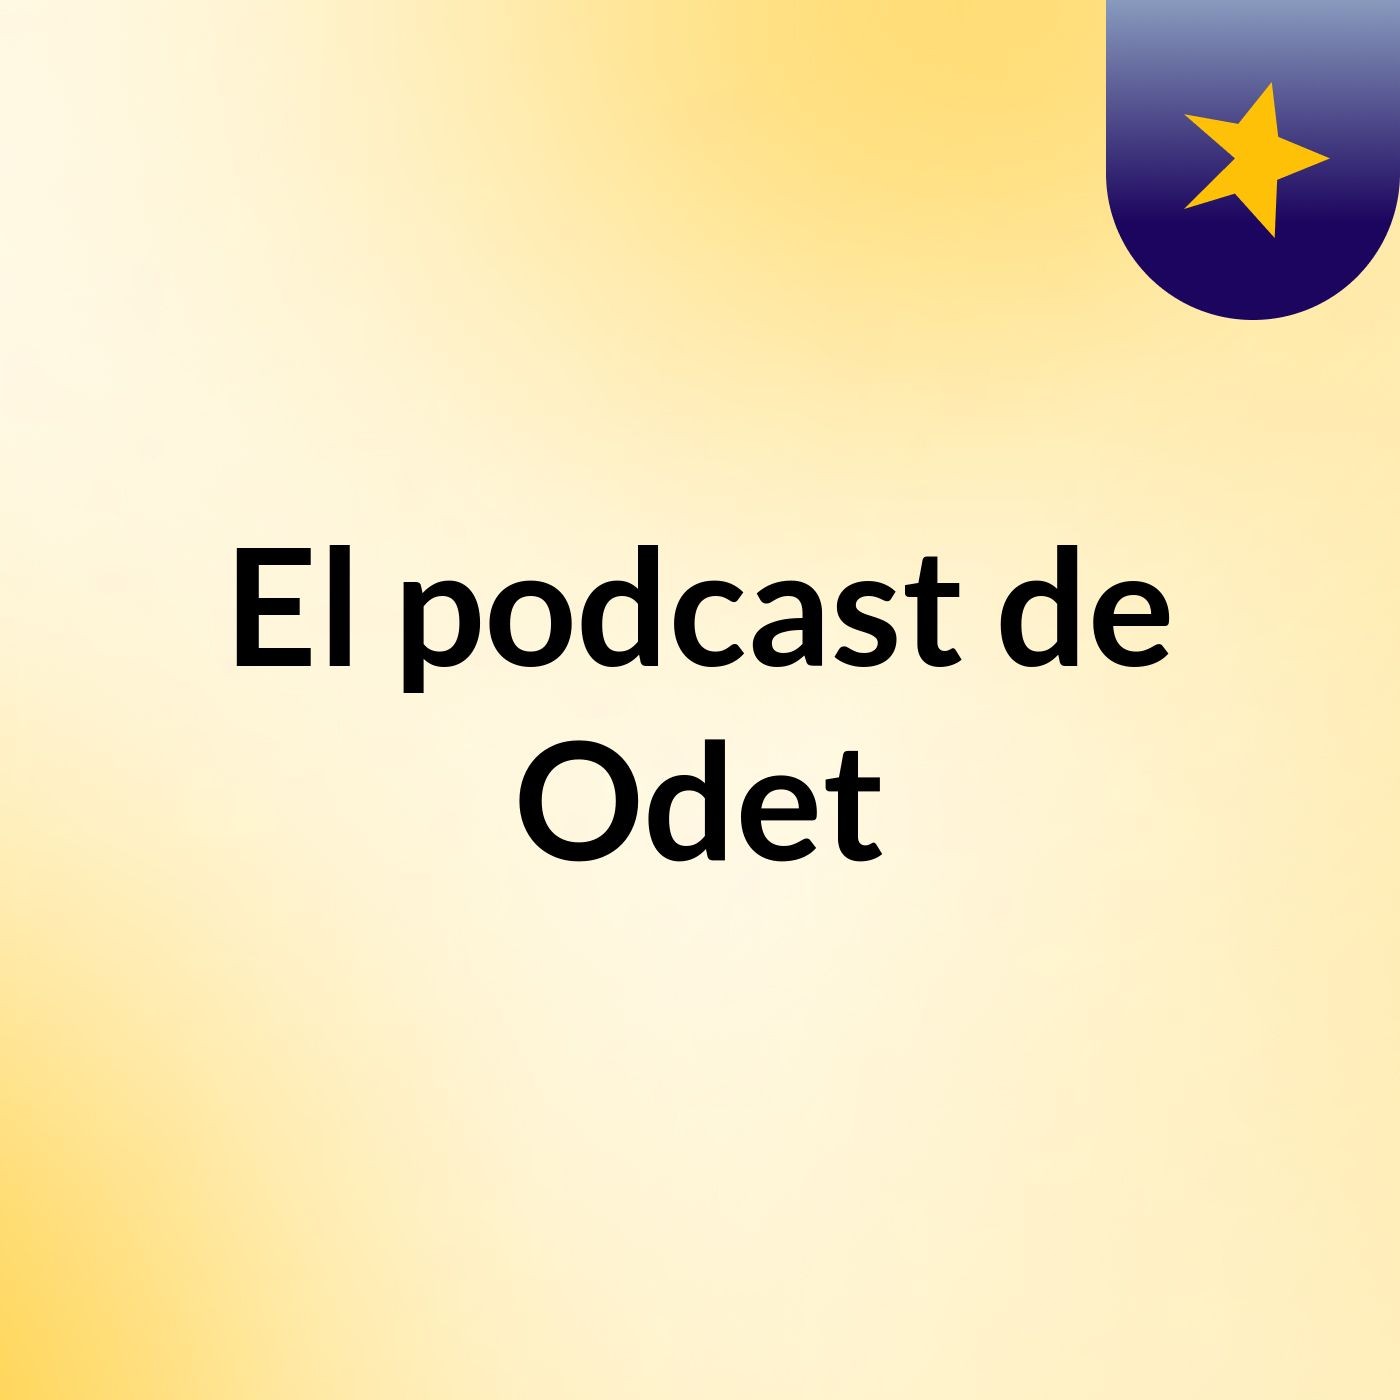 El podcast de Odet